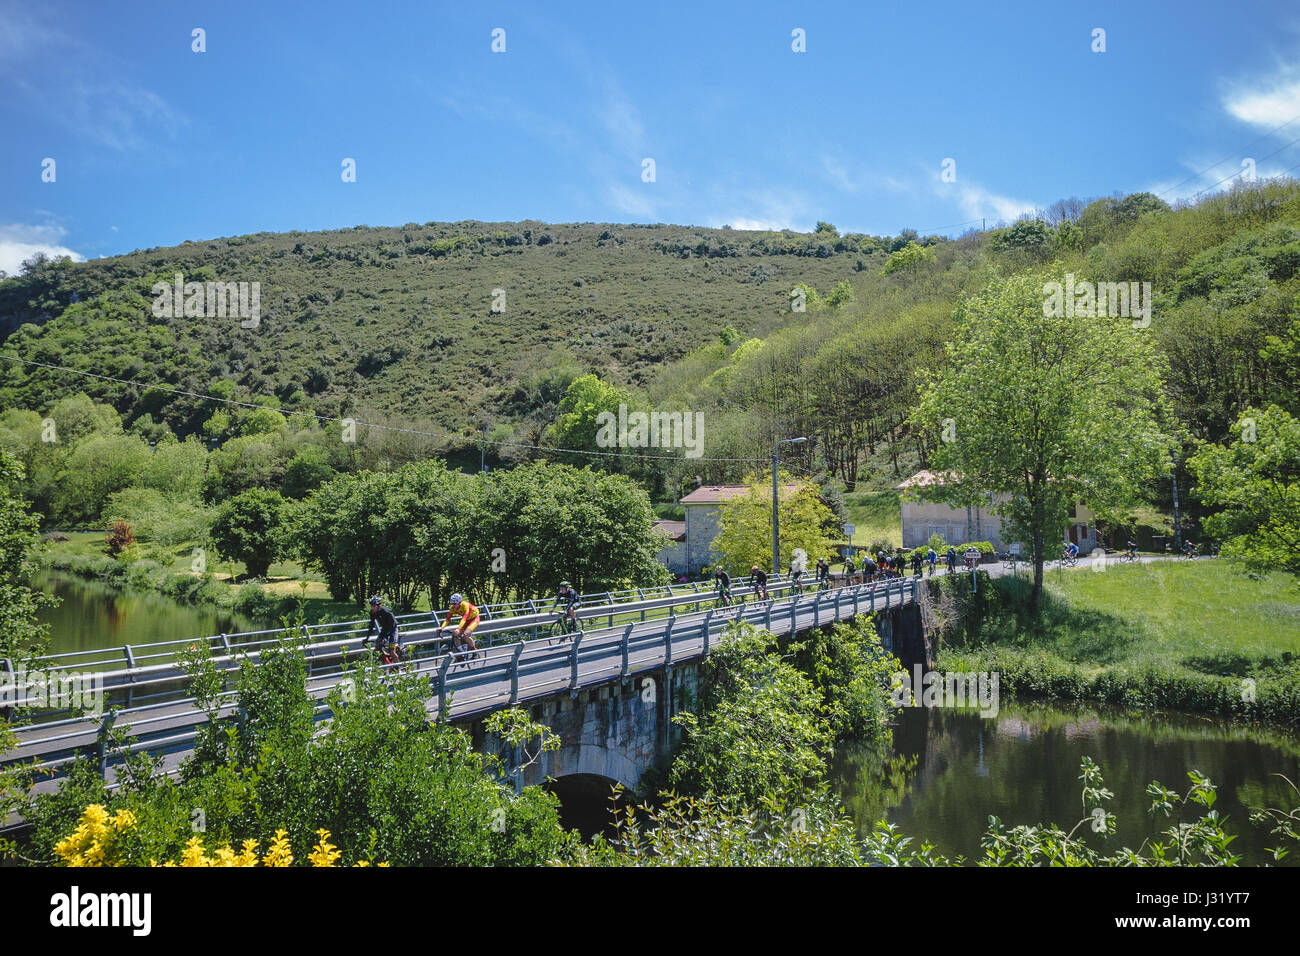 30/4/2017, Asturias, España. Vuelta Asturias, l'étape 2. Photo : Cronos/Alvaro Campo Banque D'Images